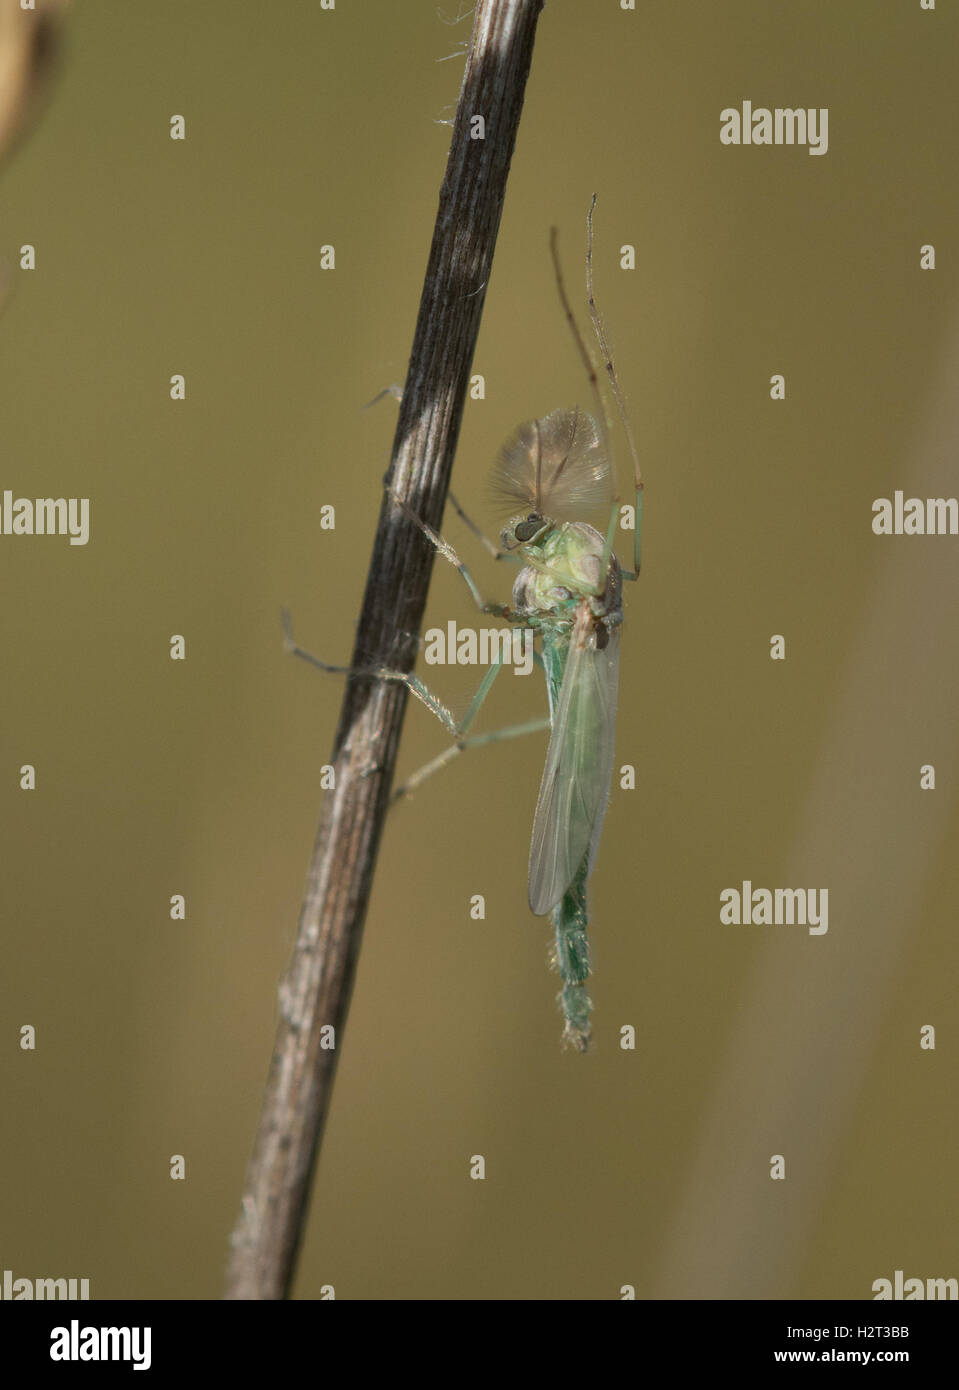 Männliche Biting-Midge - Chironomus-Arten - Chironomidae Familie - in Hampshire Heathland Lebensraum in England Stockfoto